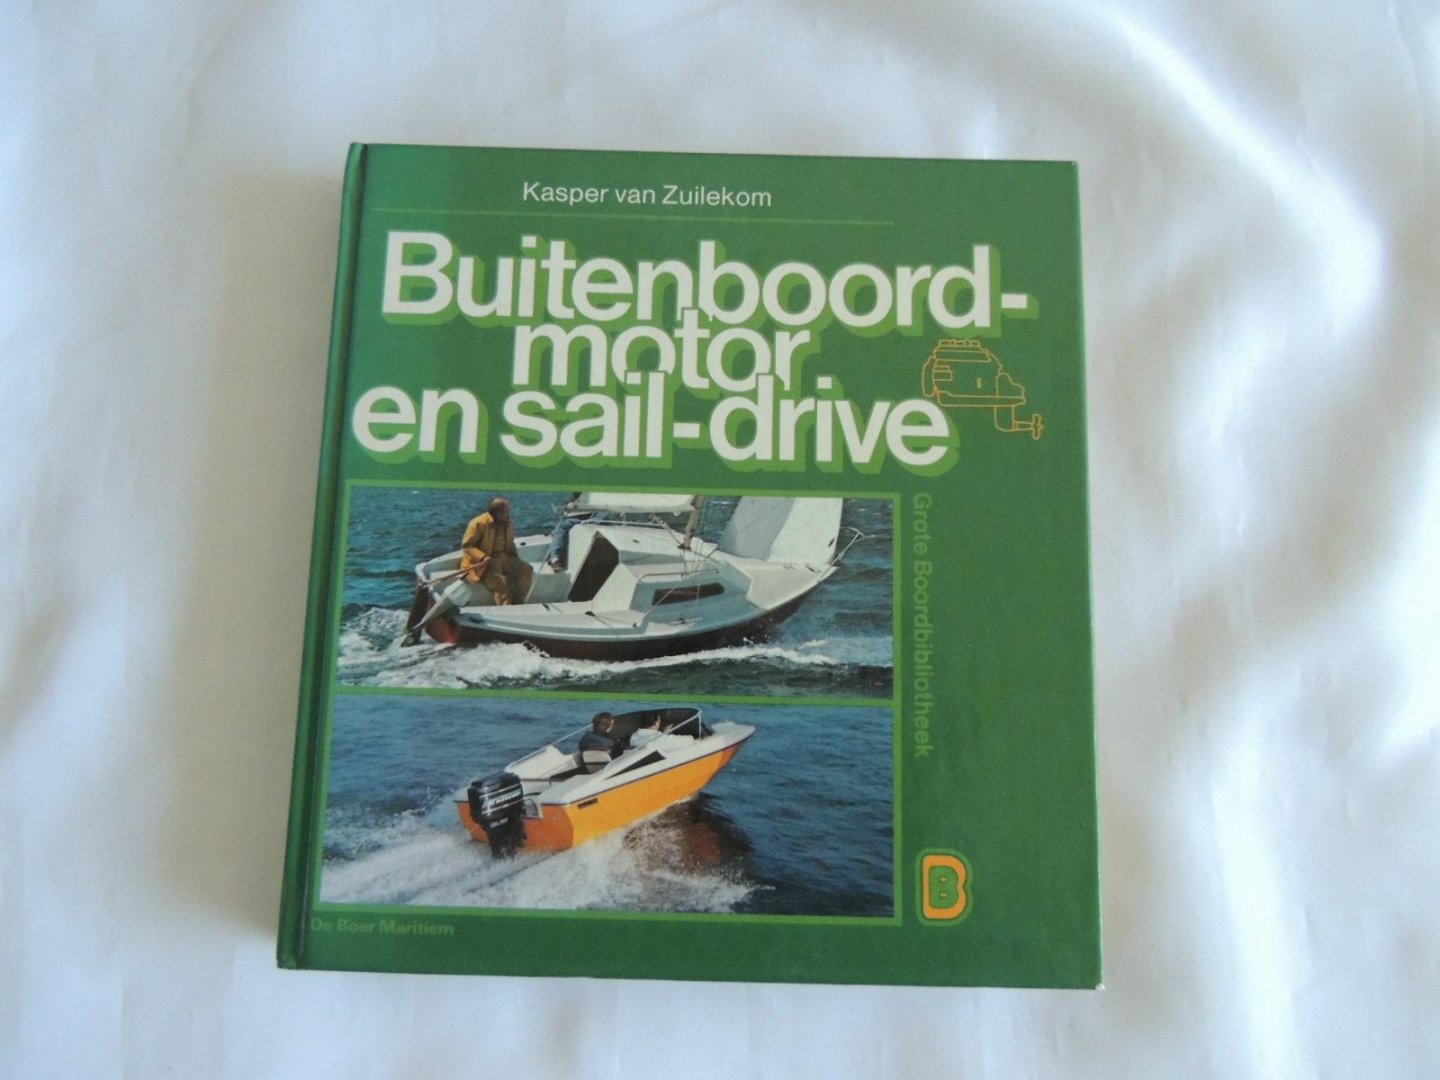 Kasper van Zuilekom - Buitenboordmotor en sail-drive